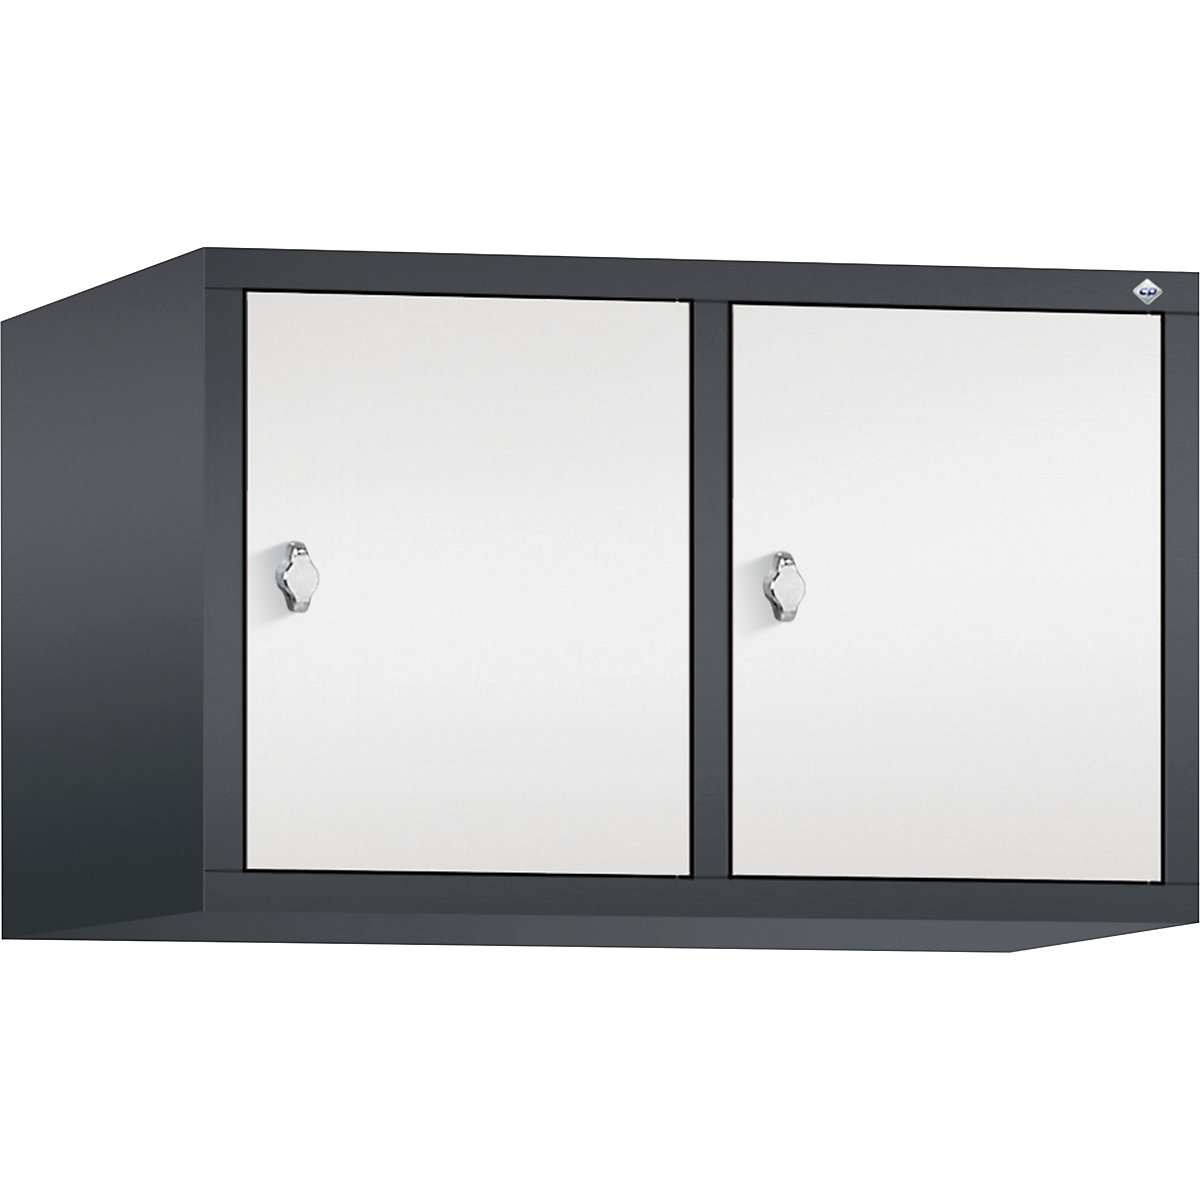 C+P – Altillo CLASSIC, 2 compartimentos, anchura de compartimento 400 mm, gris negruzco / blanco tráfico